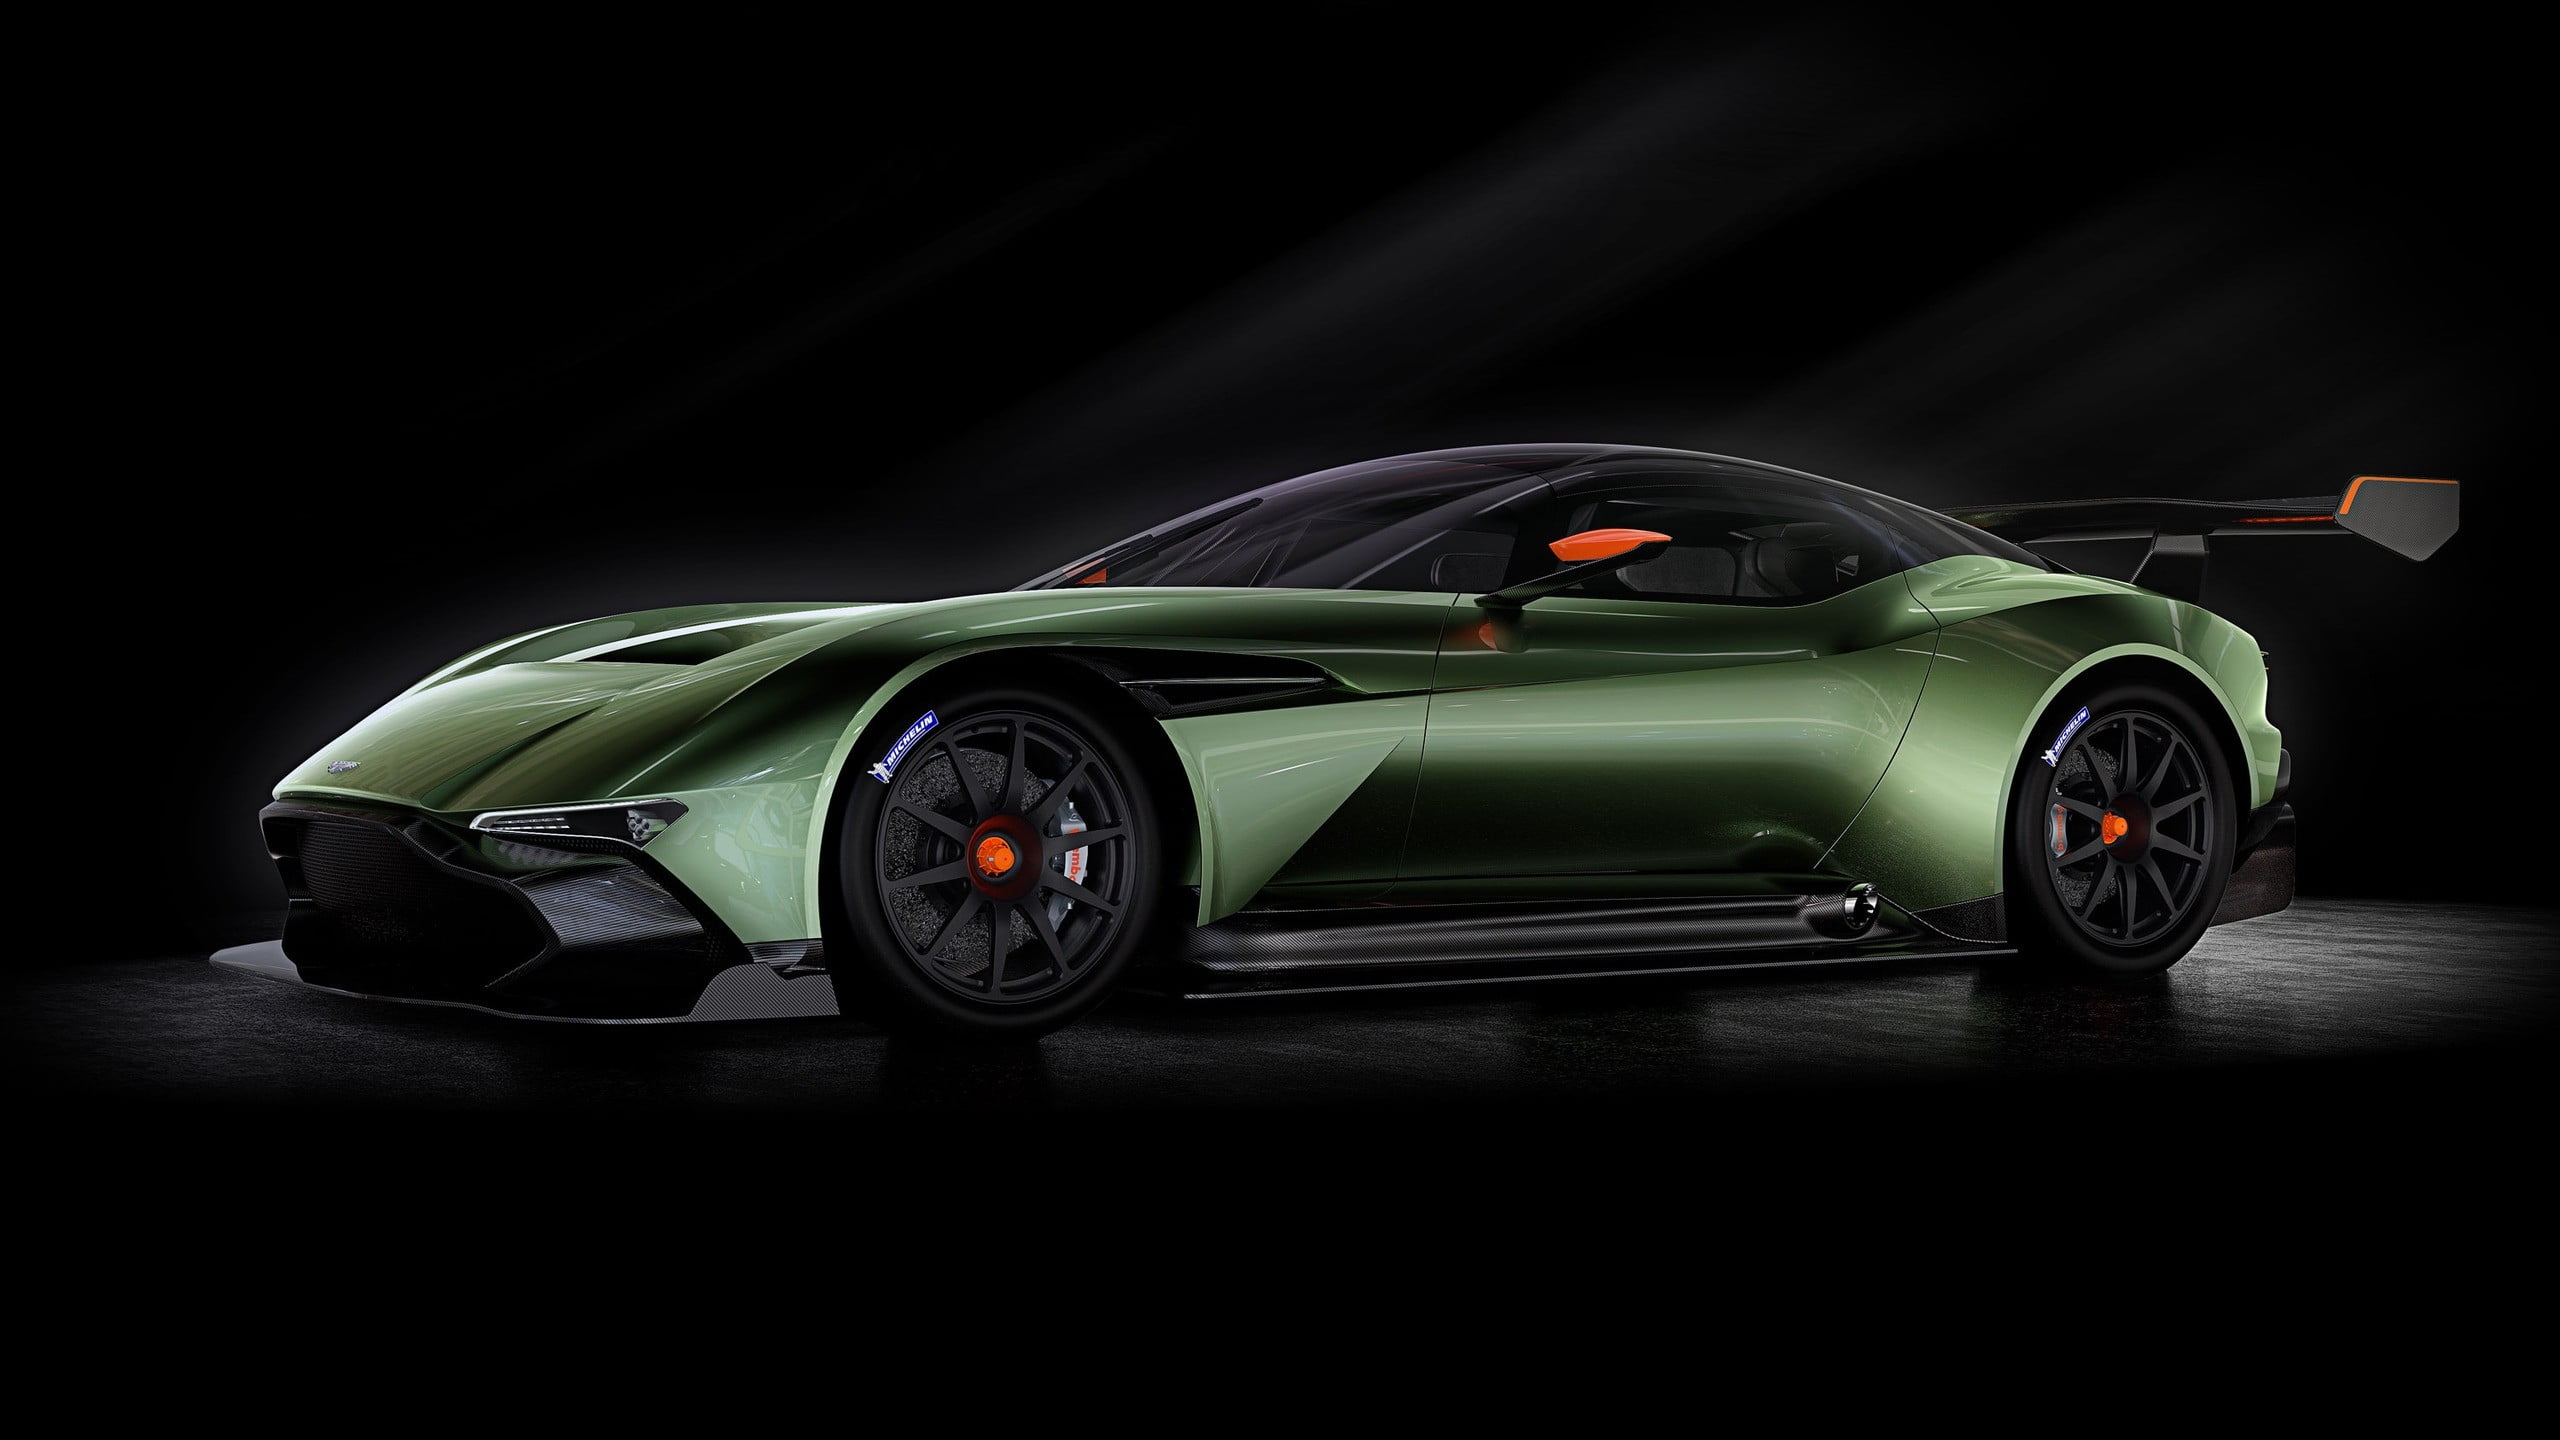 green sports car, Aston Martin, Aston Martin Vulcan, vehicle